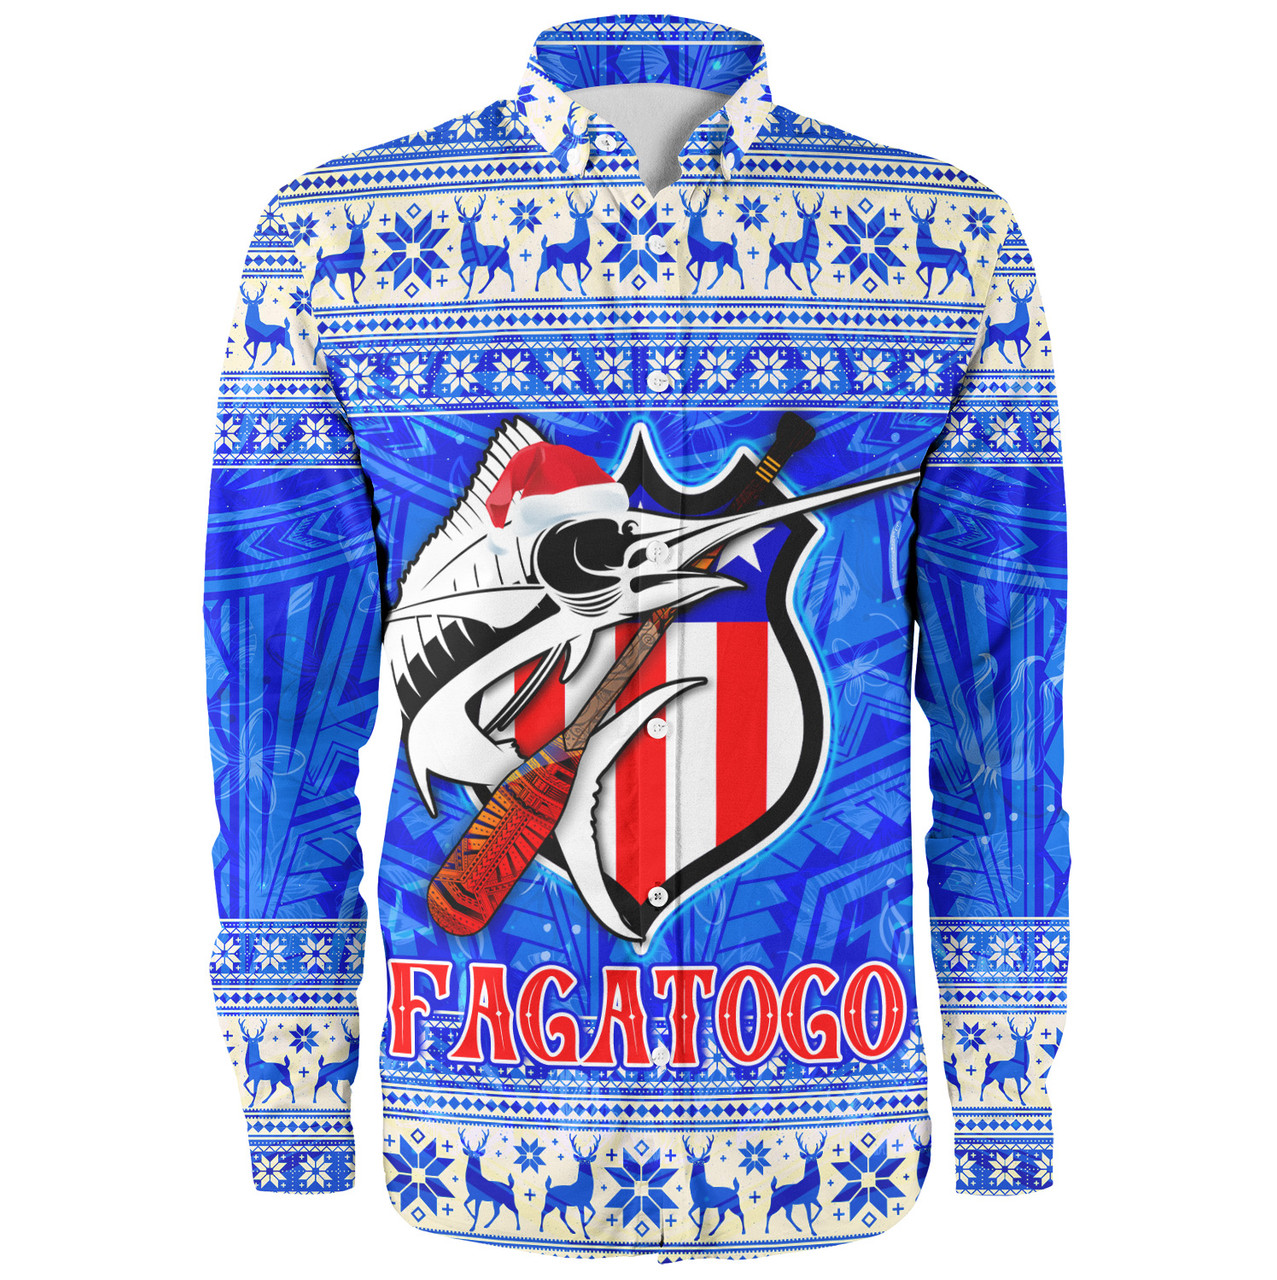 American Samoa Long Sleeve Shirt Fagatogo Christmas Style